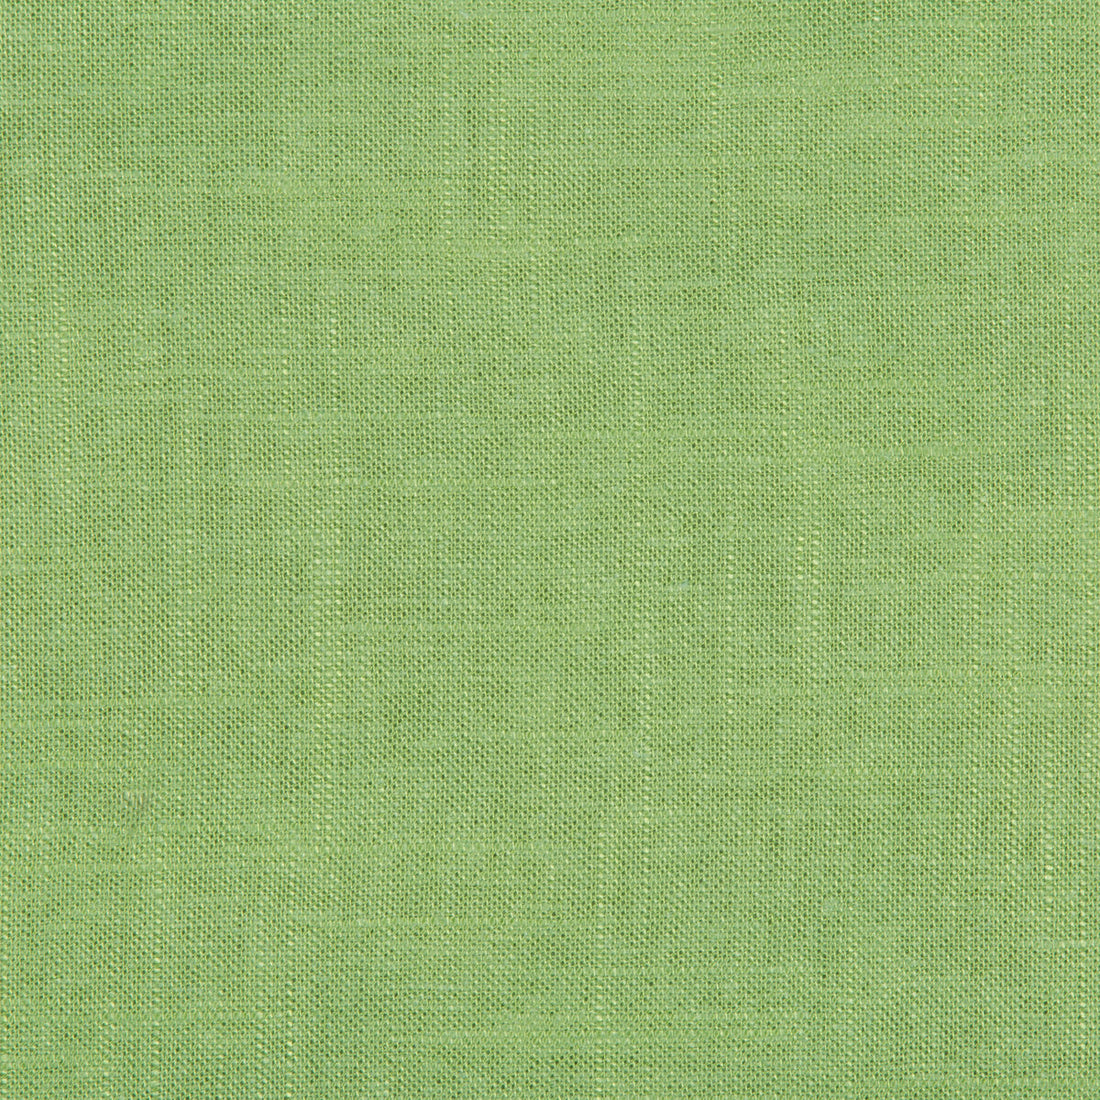 Kravet Basics fabric in 24573-3333 color - pattern 24573.3333.0 - by Kravet Basics